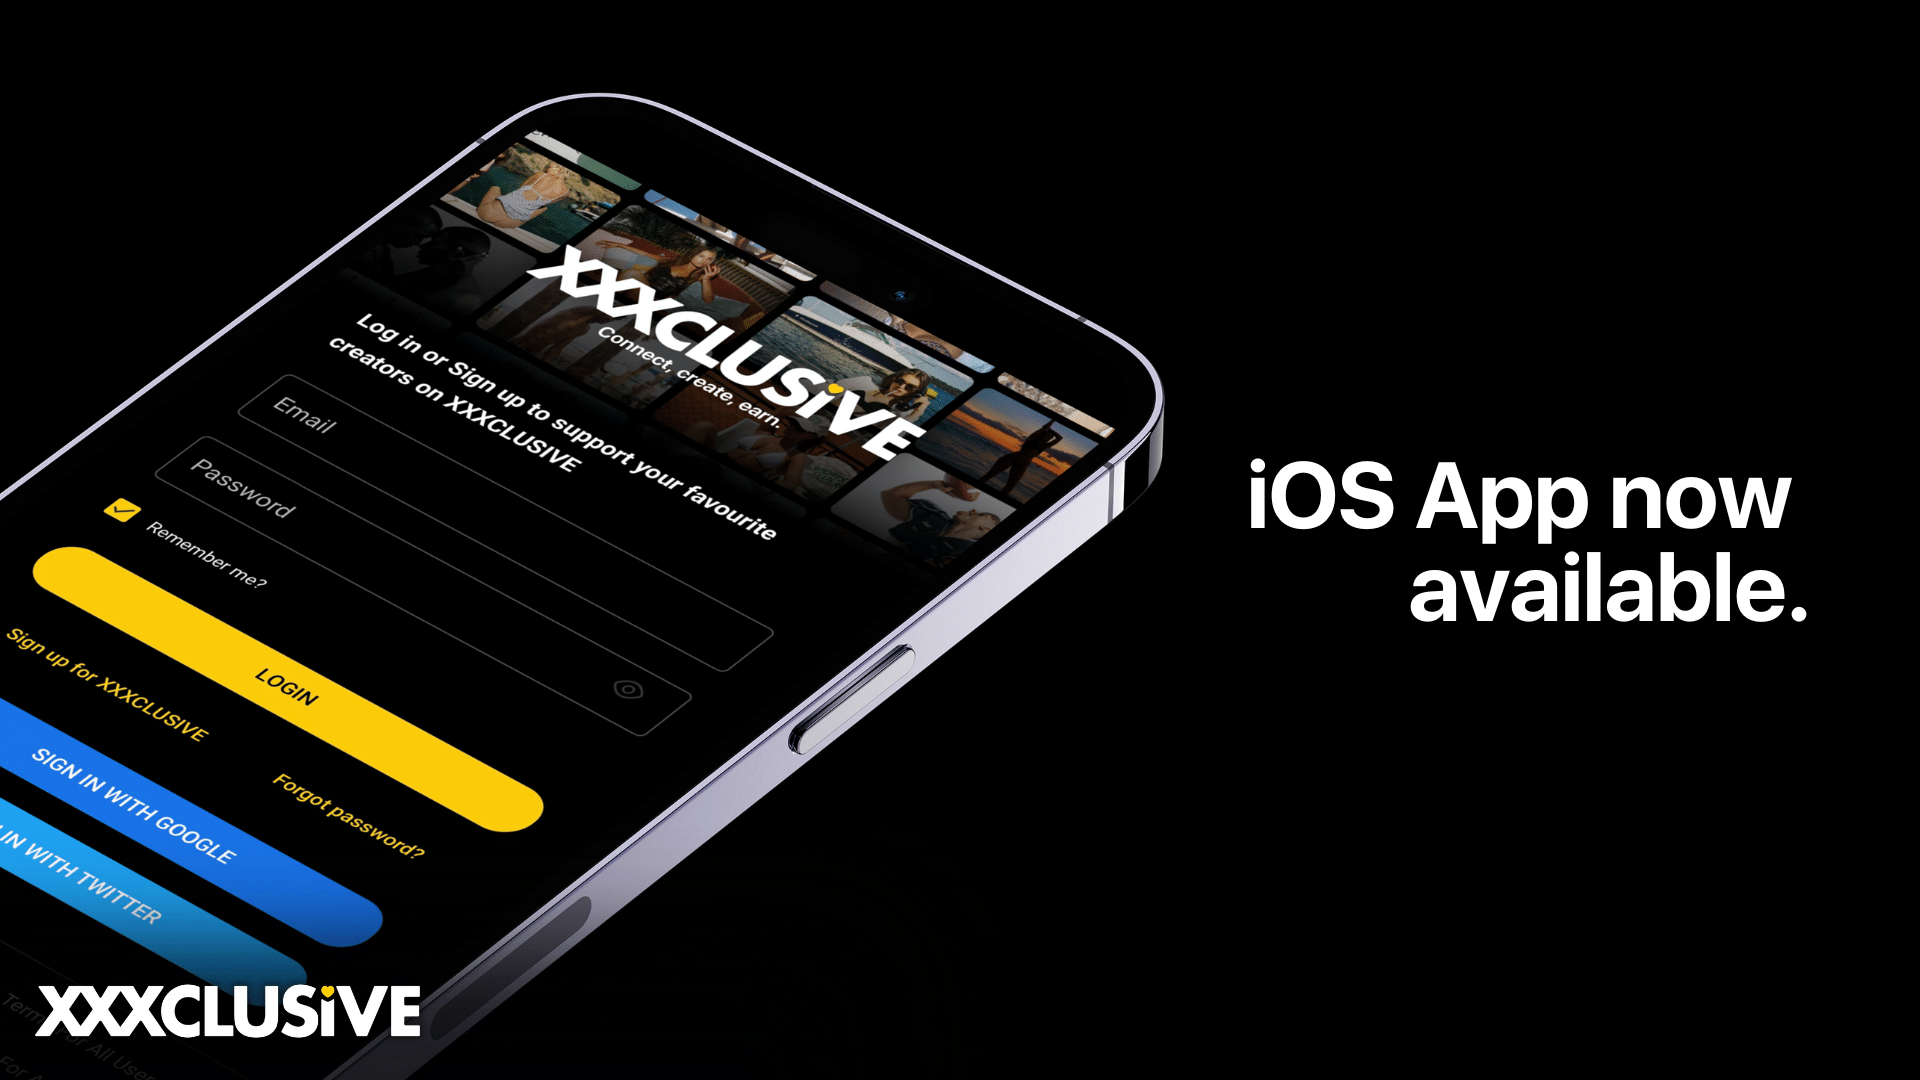 iOs App now available.